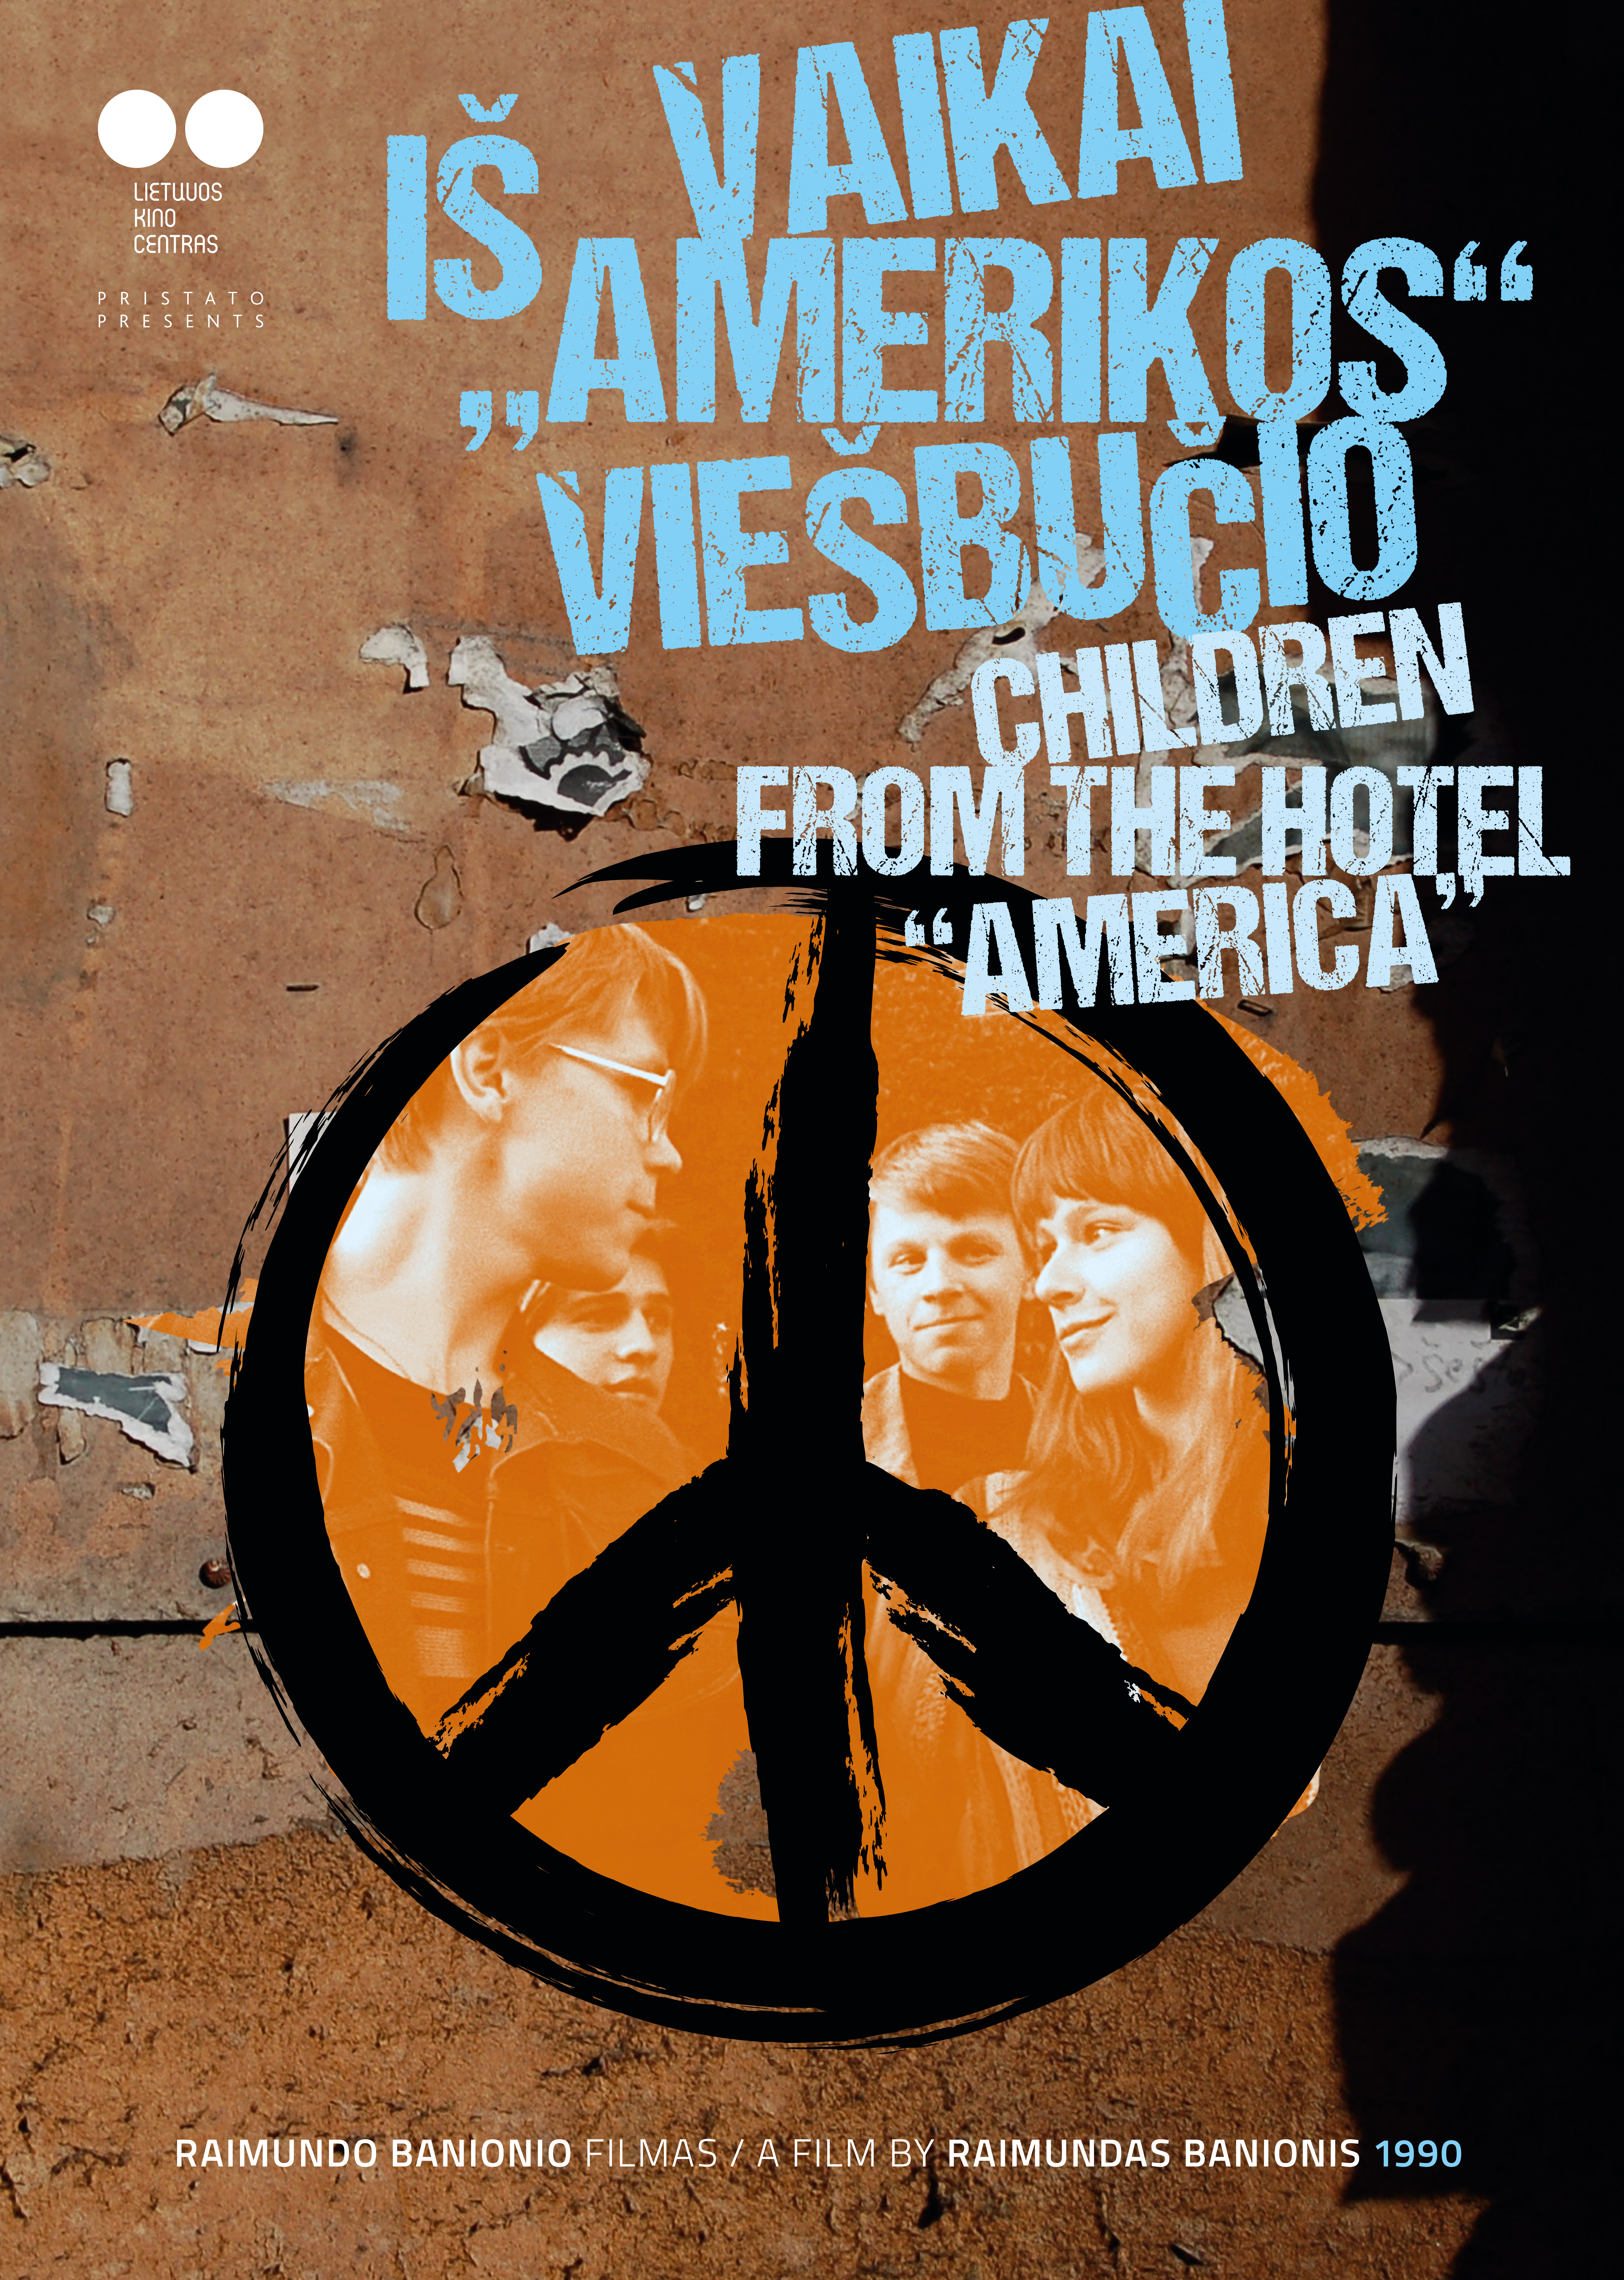 Vaikai is Amerikos viesbucio (1991) with English Subtitles on DVD on DVD